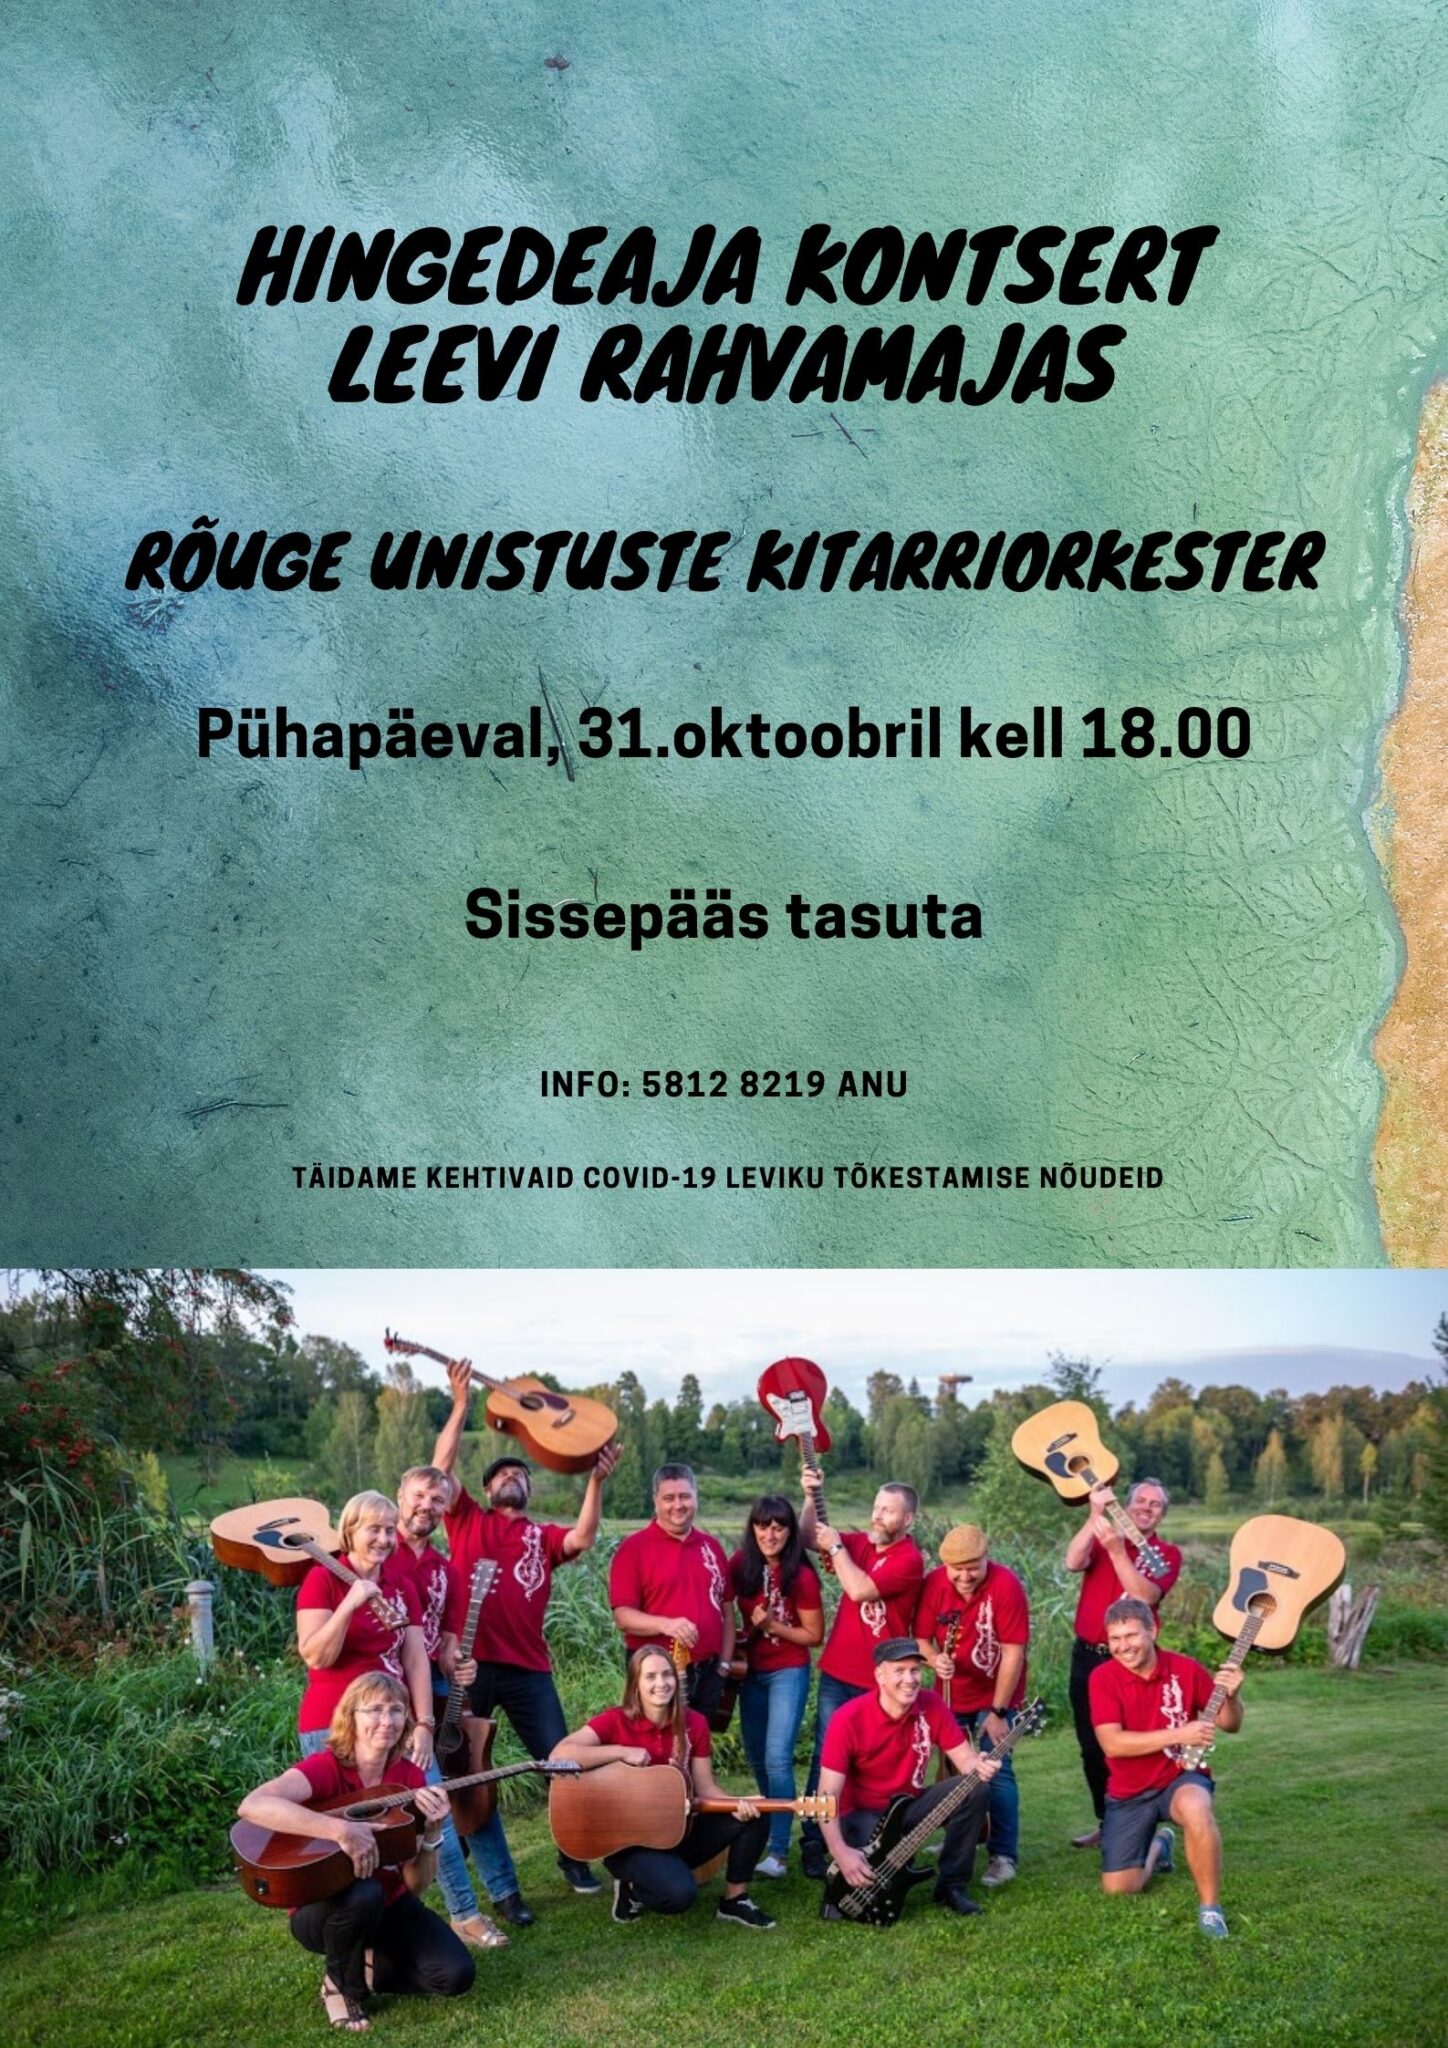 Hingedeaja kontsert @ Leevi rahvamaja | Leevi | Põlva maakond | Eesti